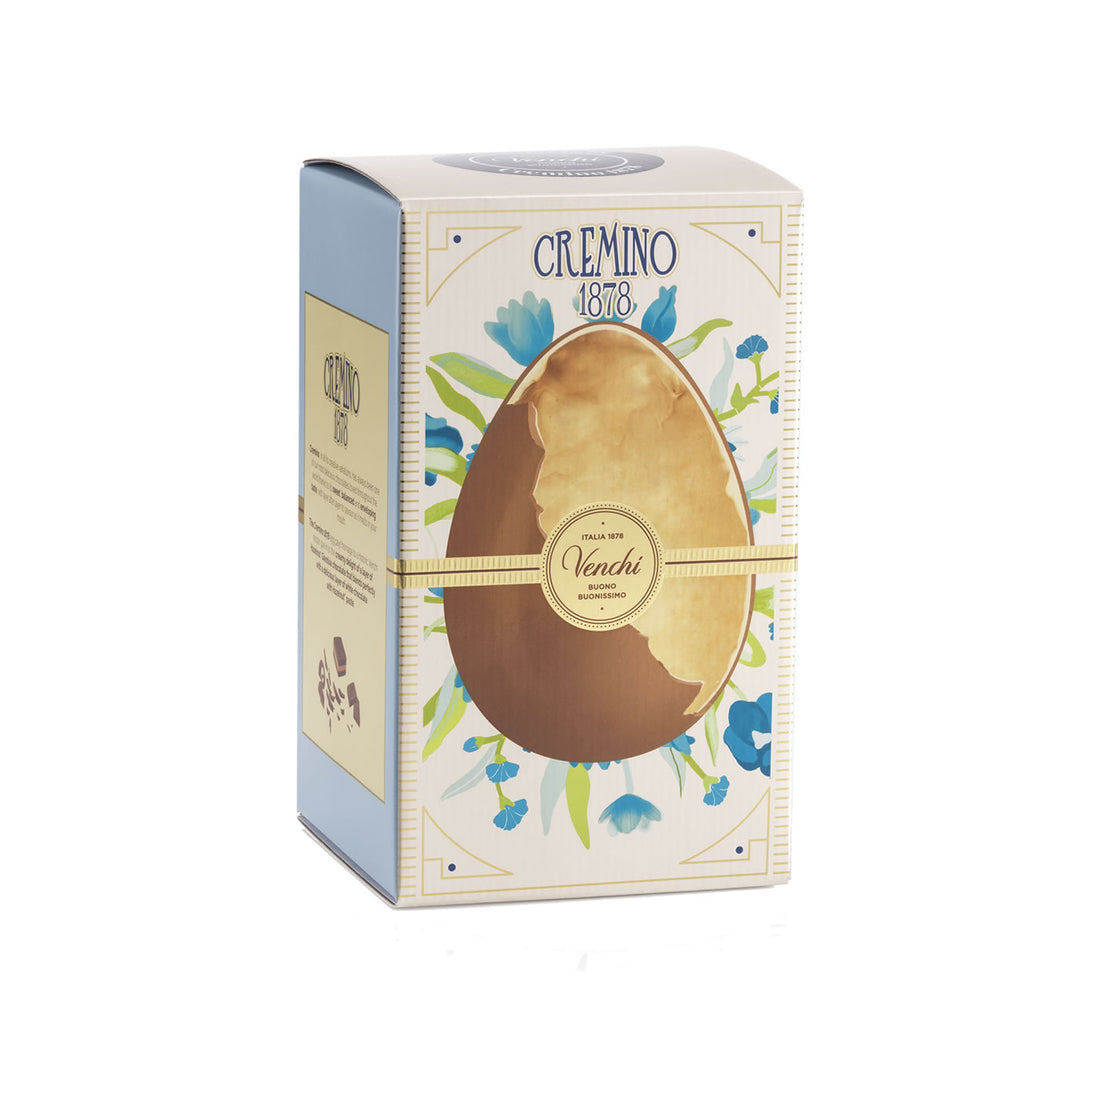 Cremino 1878 chocolate egg